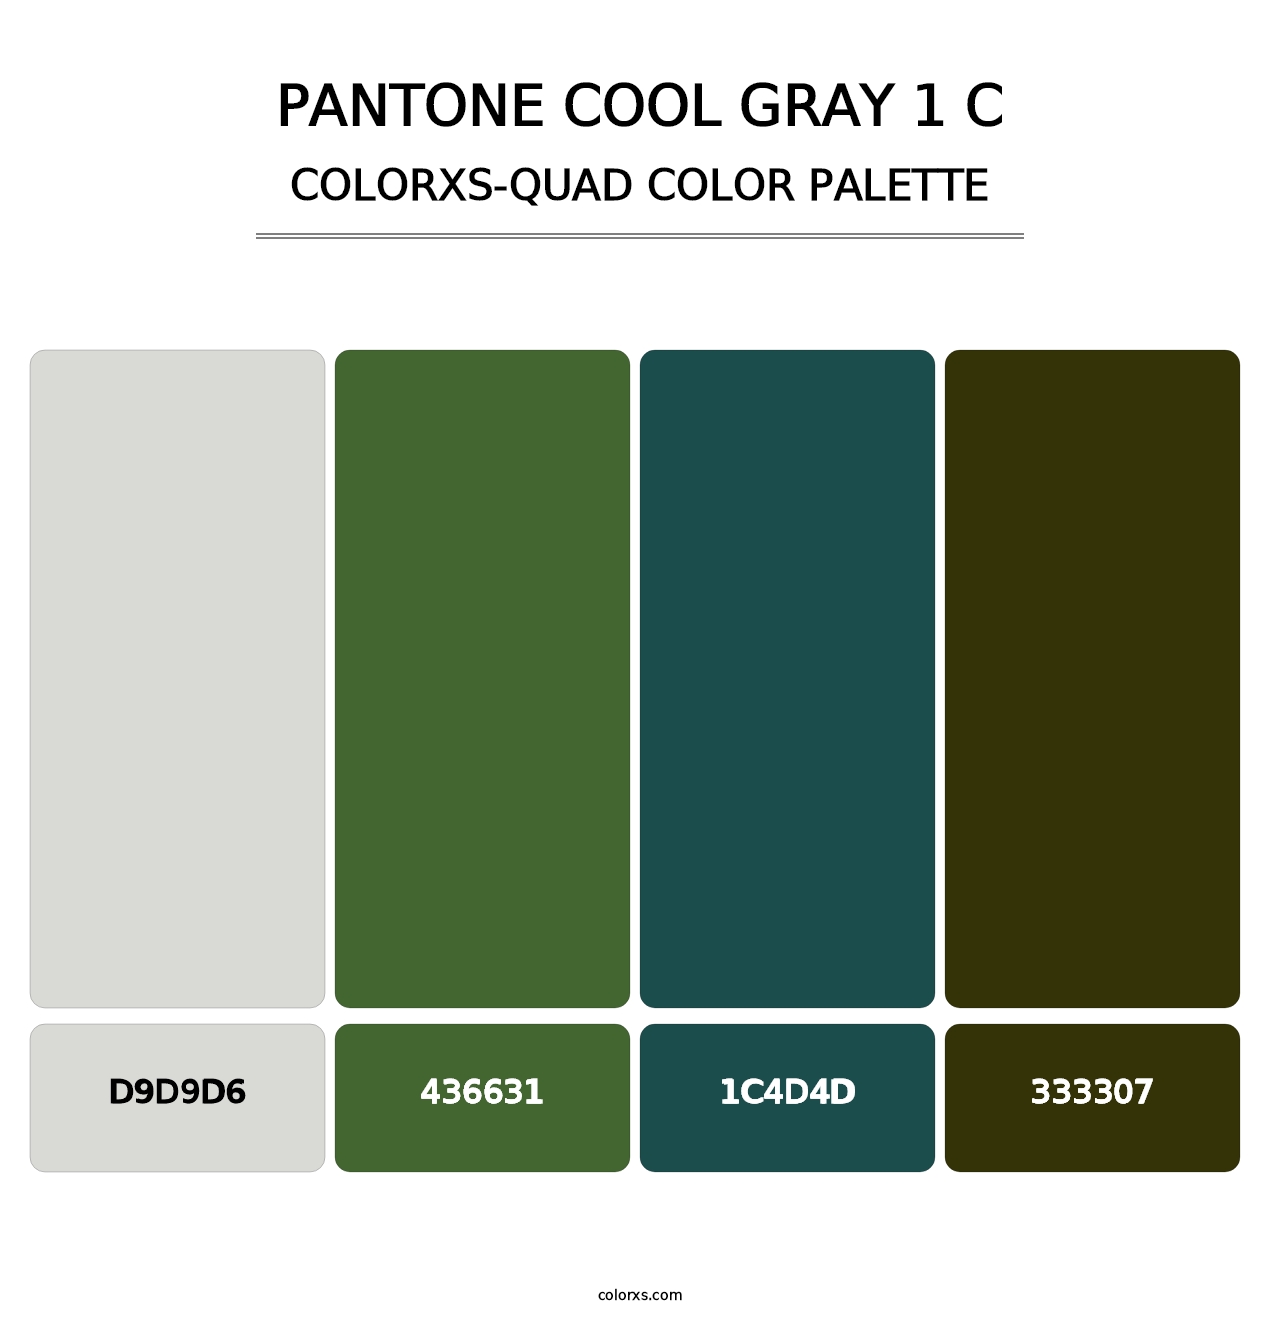 PANTONE Cool Gray 1 C - Colorxs Quad Palette